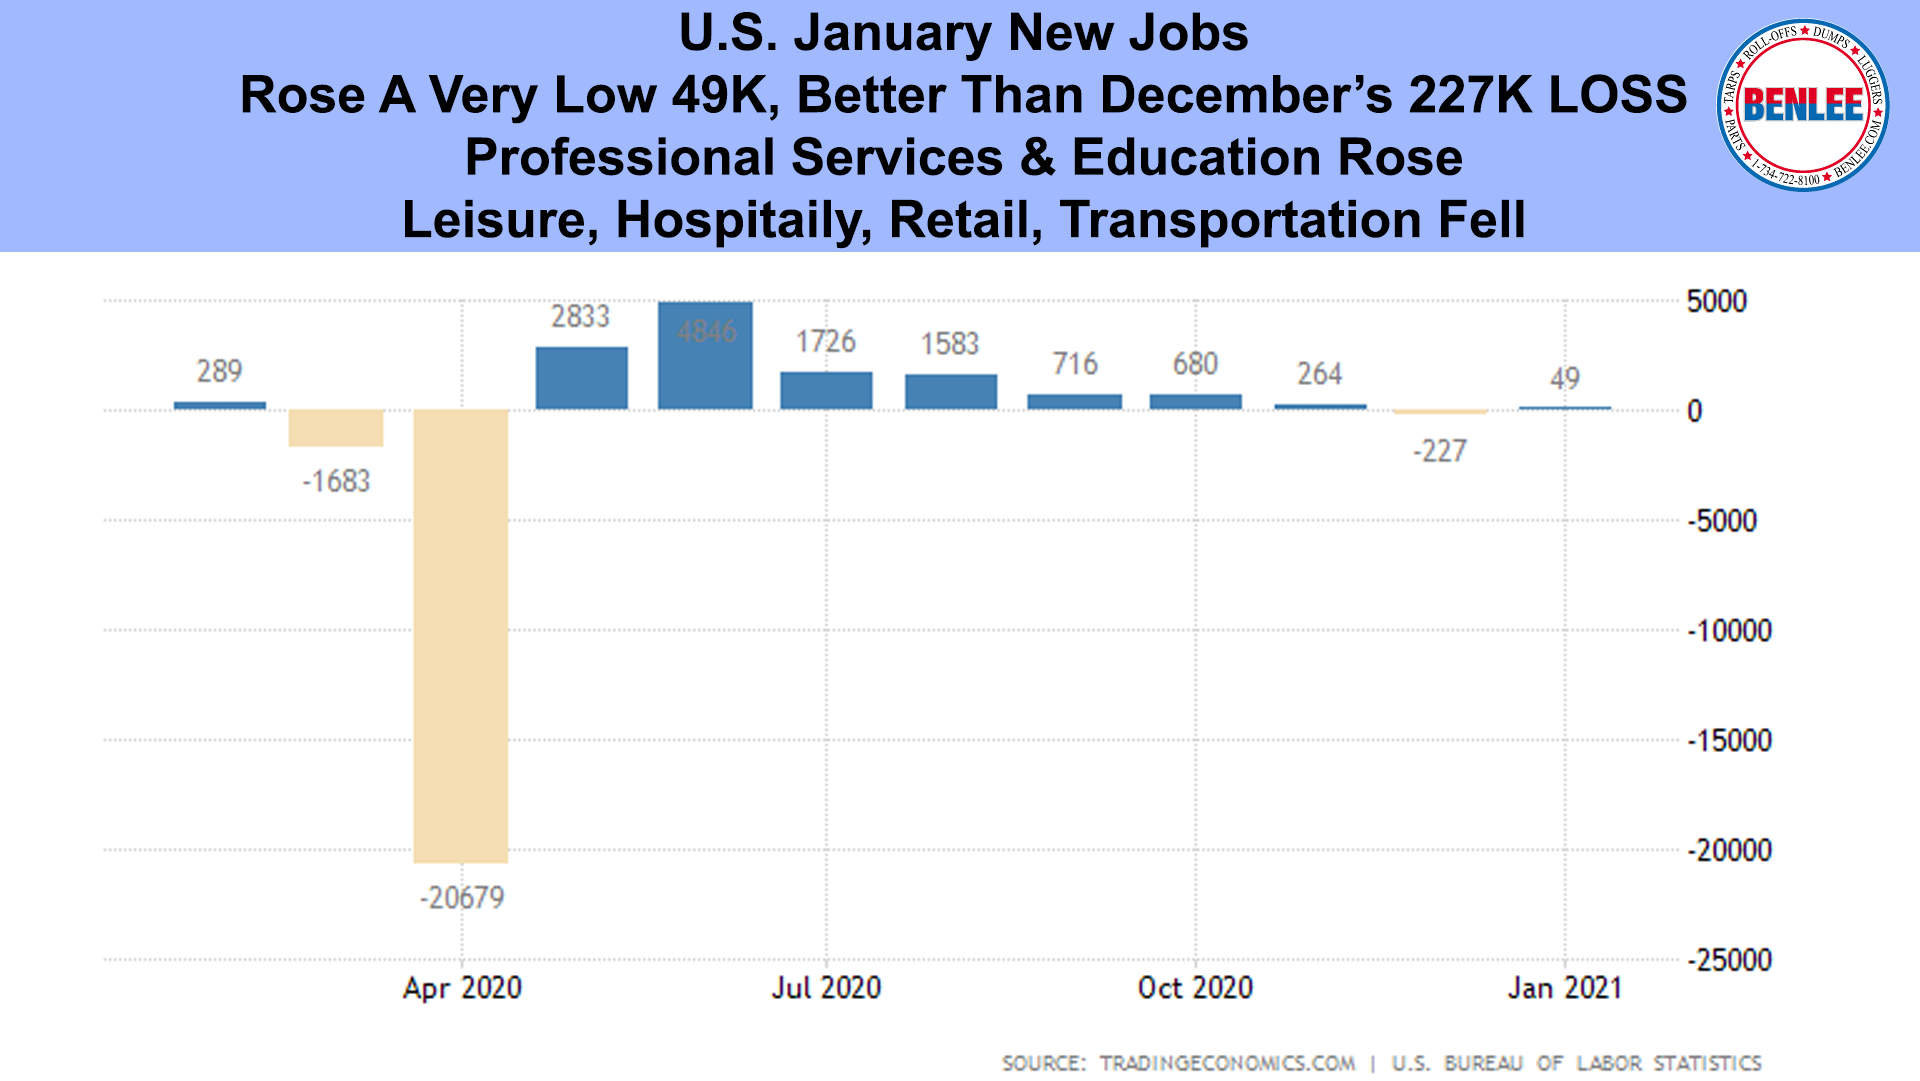 U.S. January New Jobs